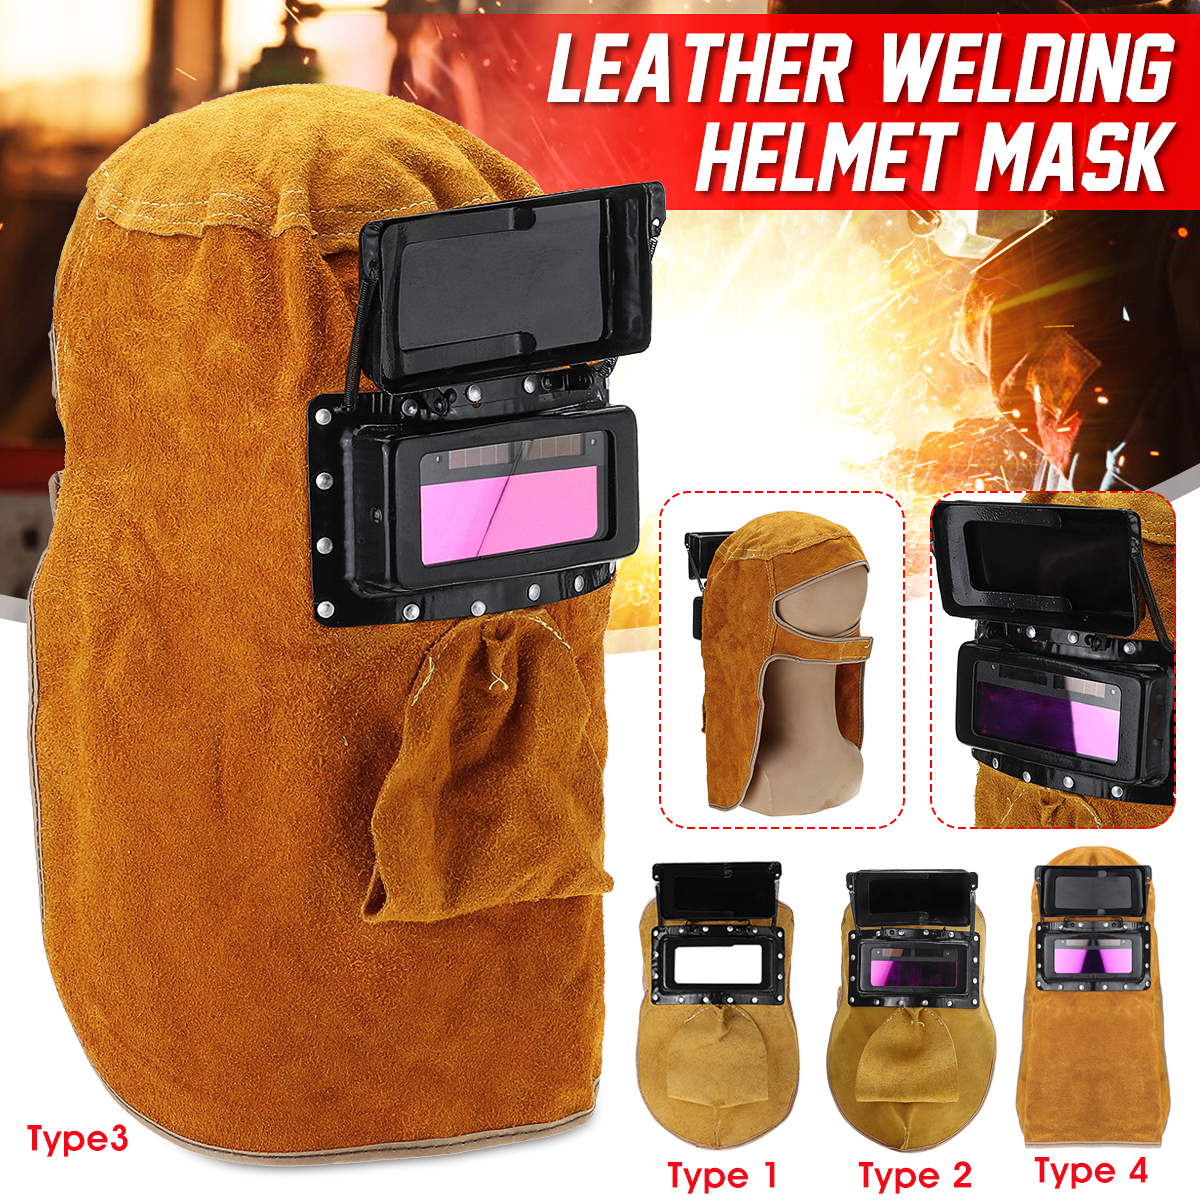 Solar-Auto-Darkening-Filter-Lens-Welder-Leather-Welding-Helmet-Full-Mask-Hood-1628687-1